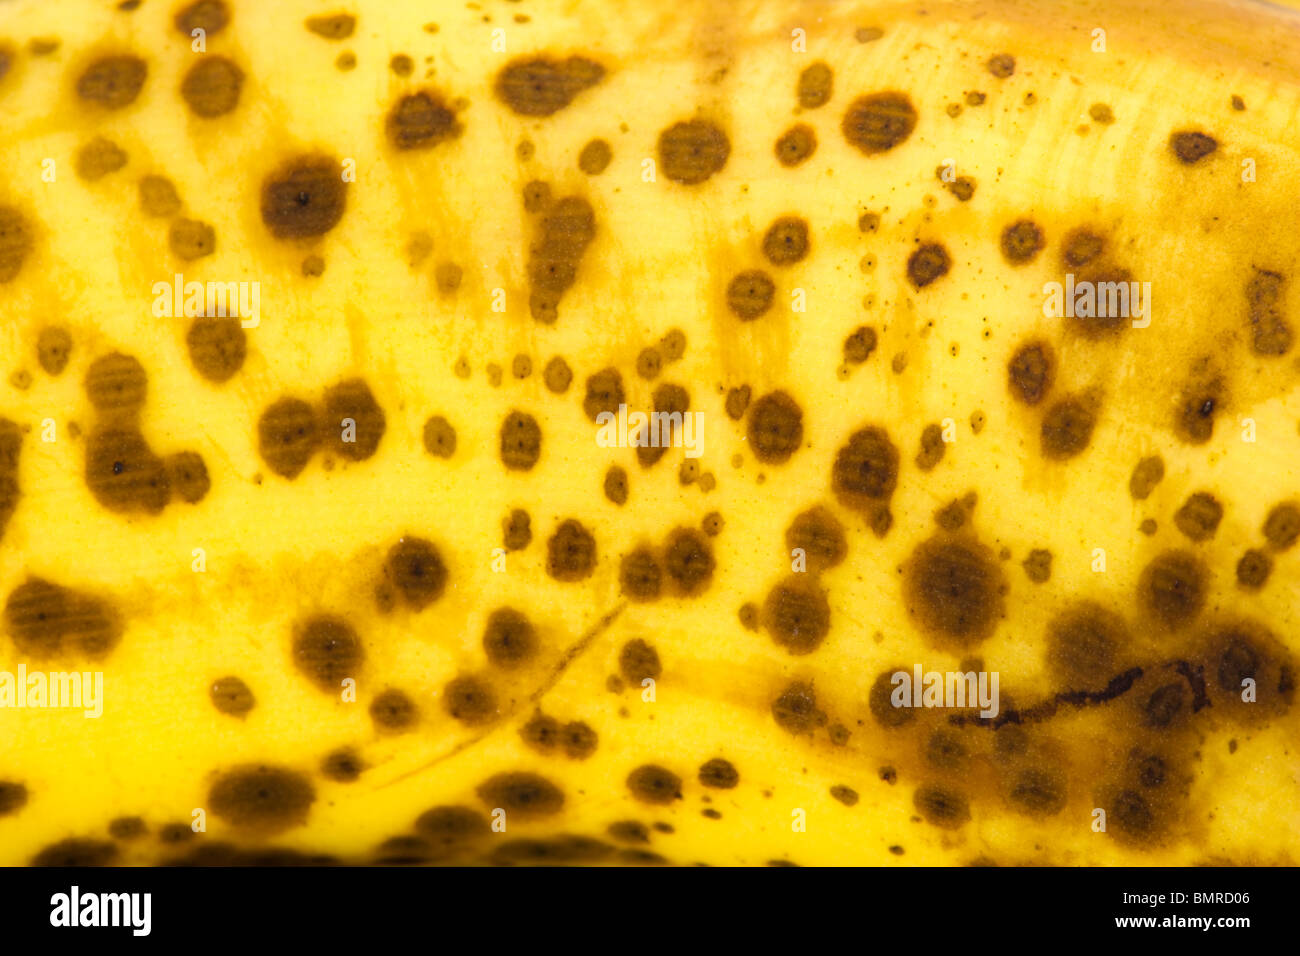 Spotty banana skin Stock Photo